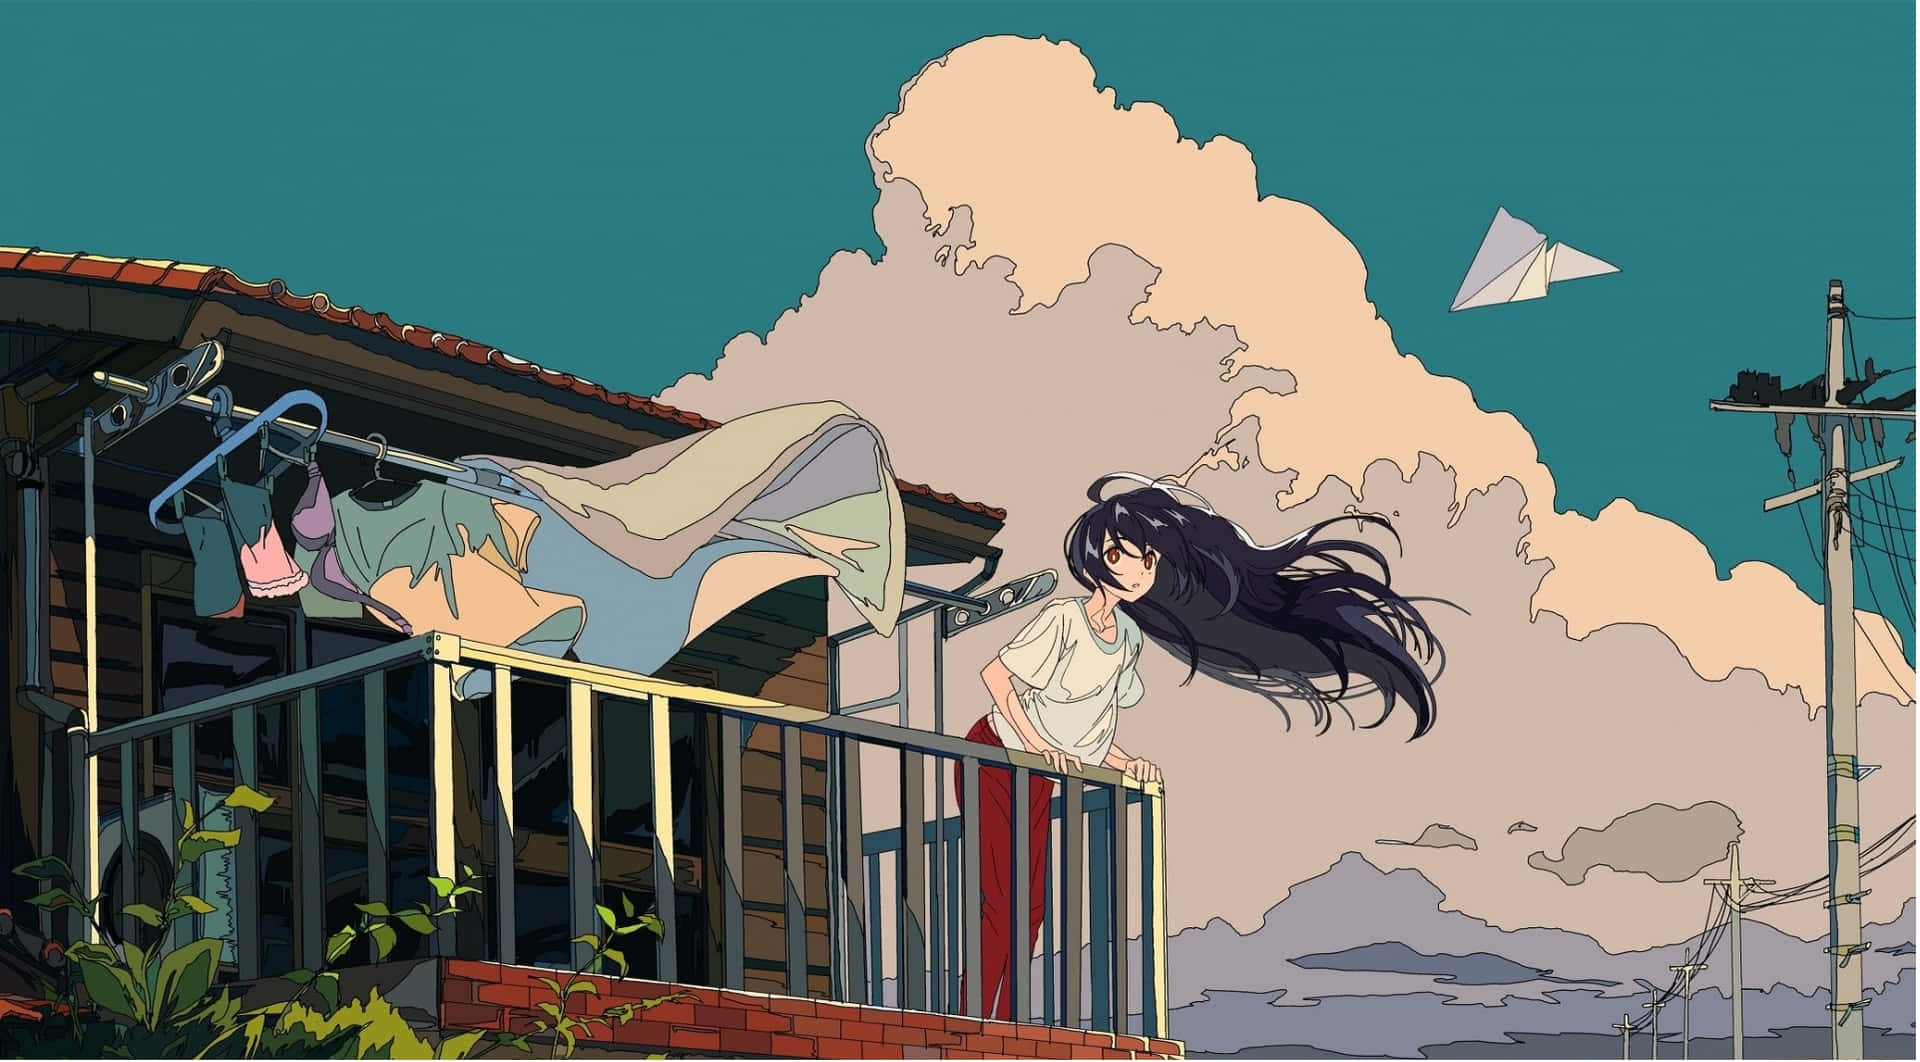 Enfantasifuld Anime-æstetisk Tapet Af To Karakterer I En Livlig Solnedgang.